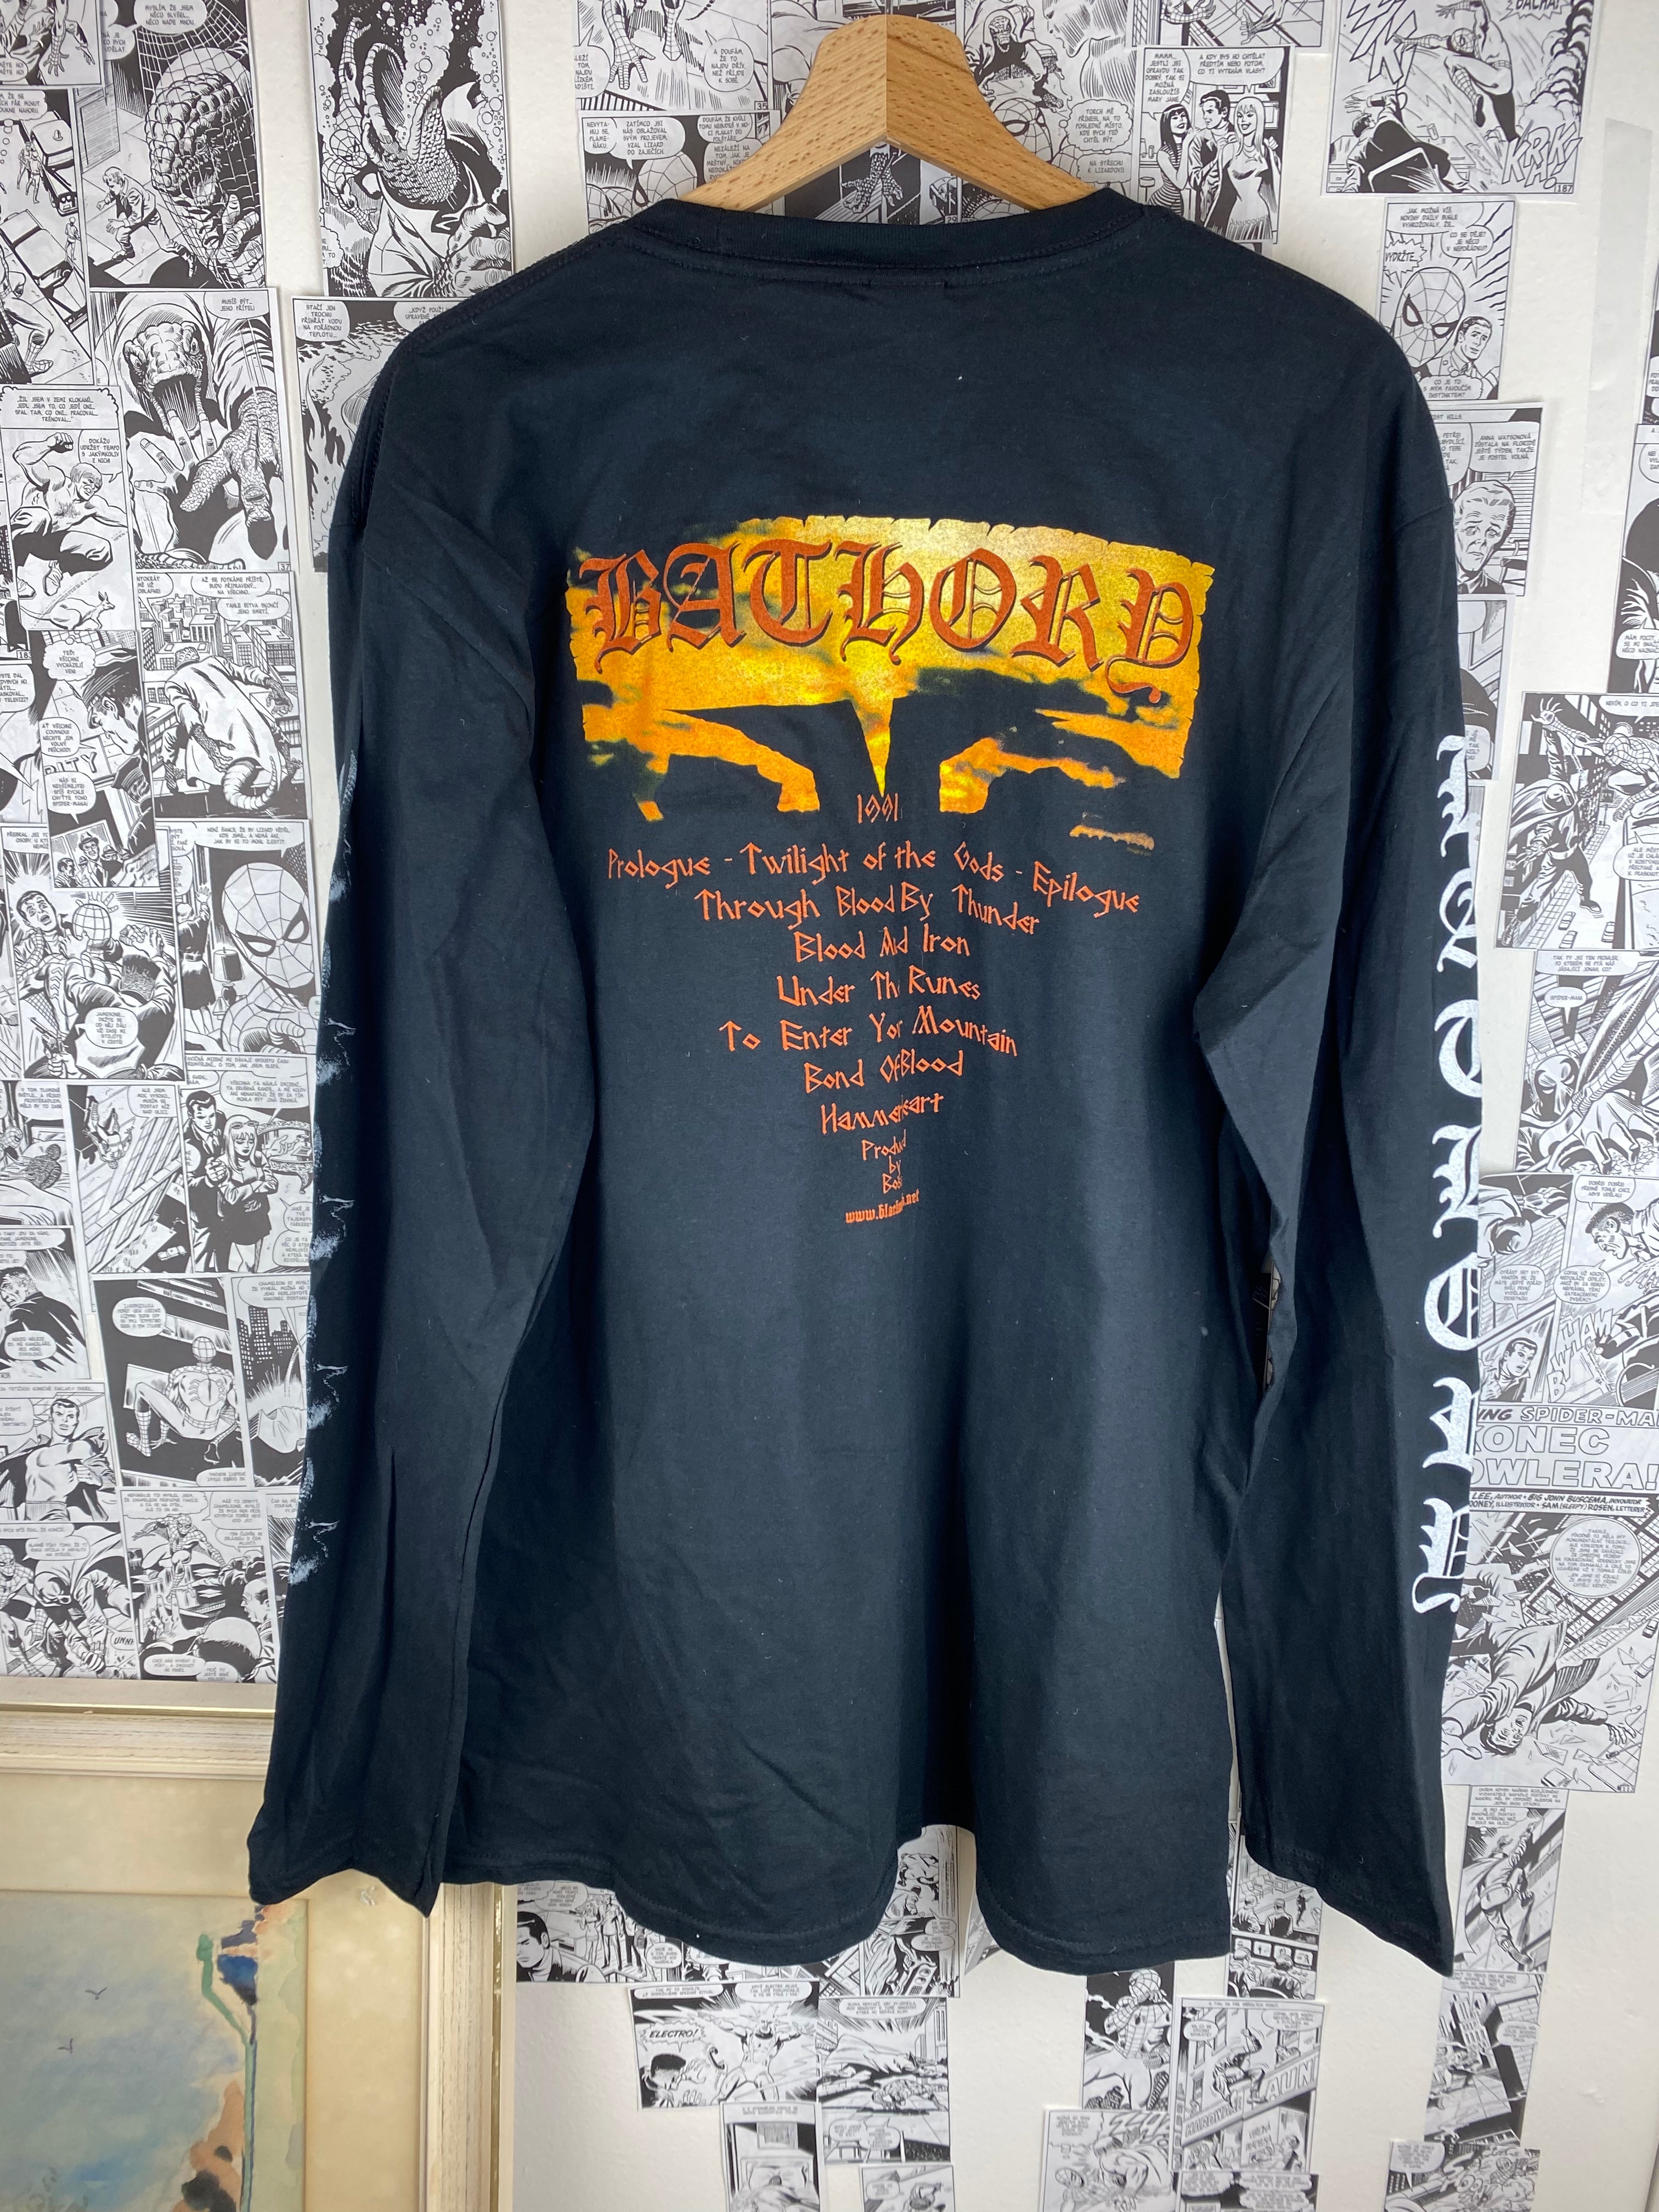 Vintage Bathory “Twilight of the Gods” 00s t-shirt - size XL